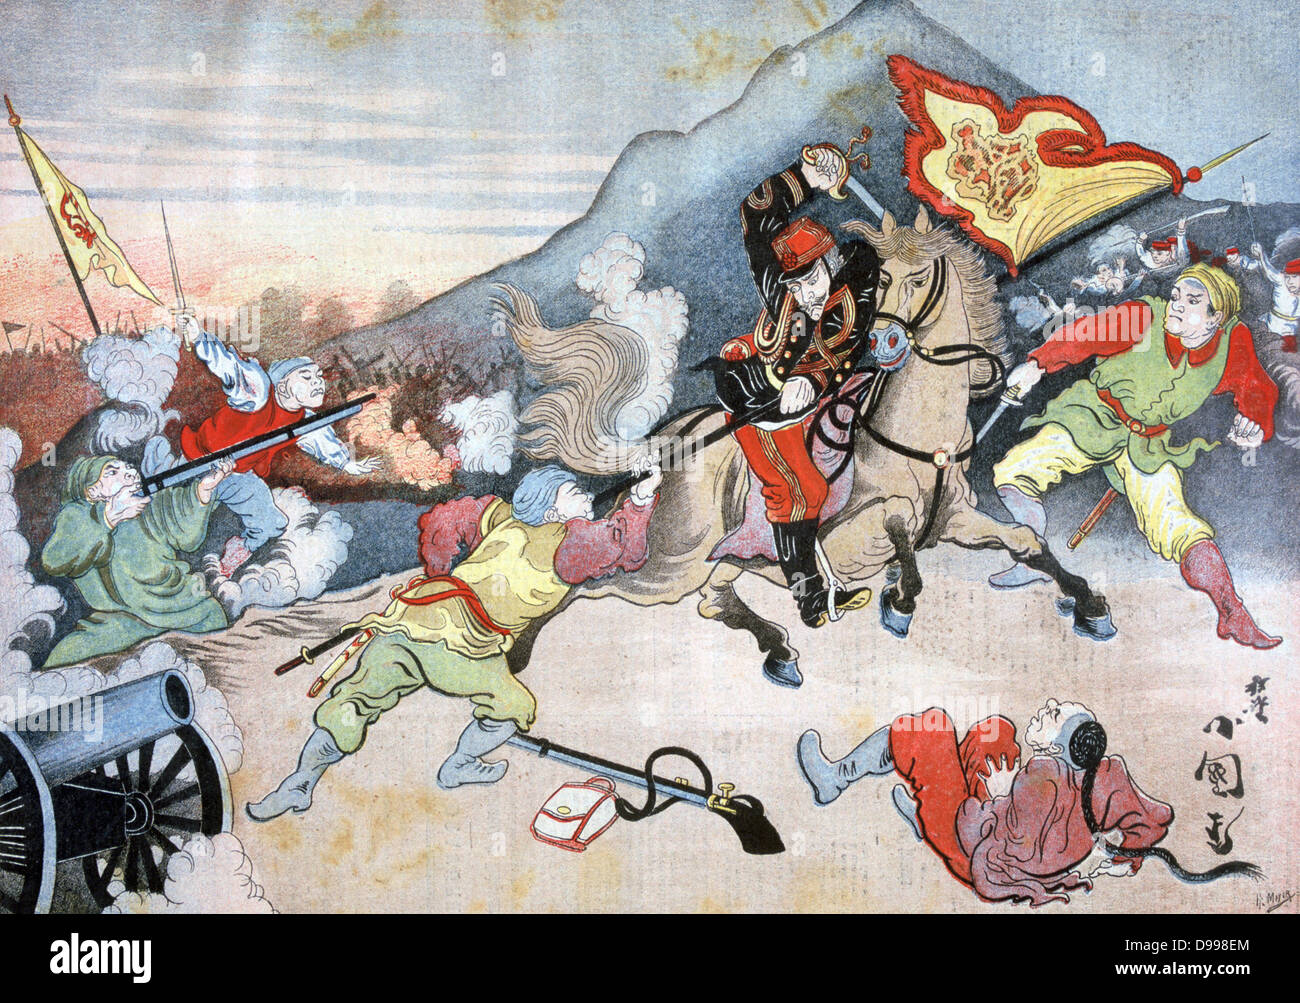 Première guerre sino-japonaise 1894-1895, produisent principalement pour le contrôle de la Corée. Monté un bureau japonais de saisir un drapeau chinois. Illustration basée sur une peinture japonaise. À partir de 'Le Petit Journal', Paris, 29 octobre 1894. Fusil, carabine, Cannon Banque D'Images